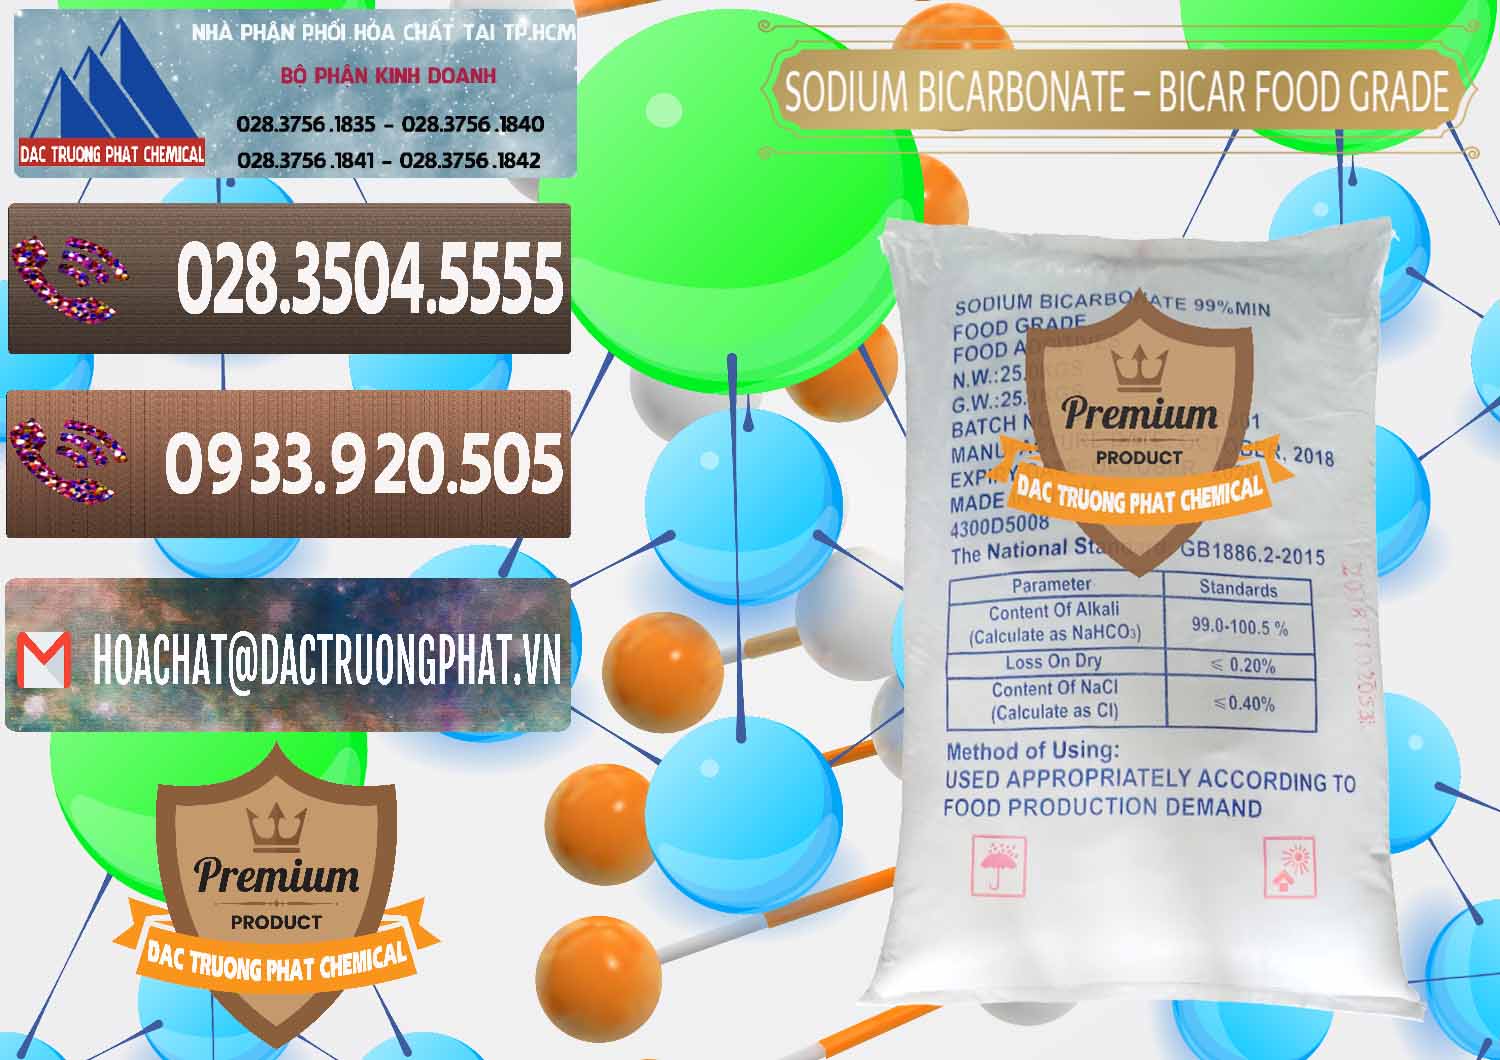 Nơi chuyên kinh doanh và bán Sodium Bicarbonate – Bicar NaHCO3 Food Grade Trung Quốc China - 0138 - Cty phân phối & cung cấp hóa chất tại TP.HCM - hoachatviet.net